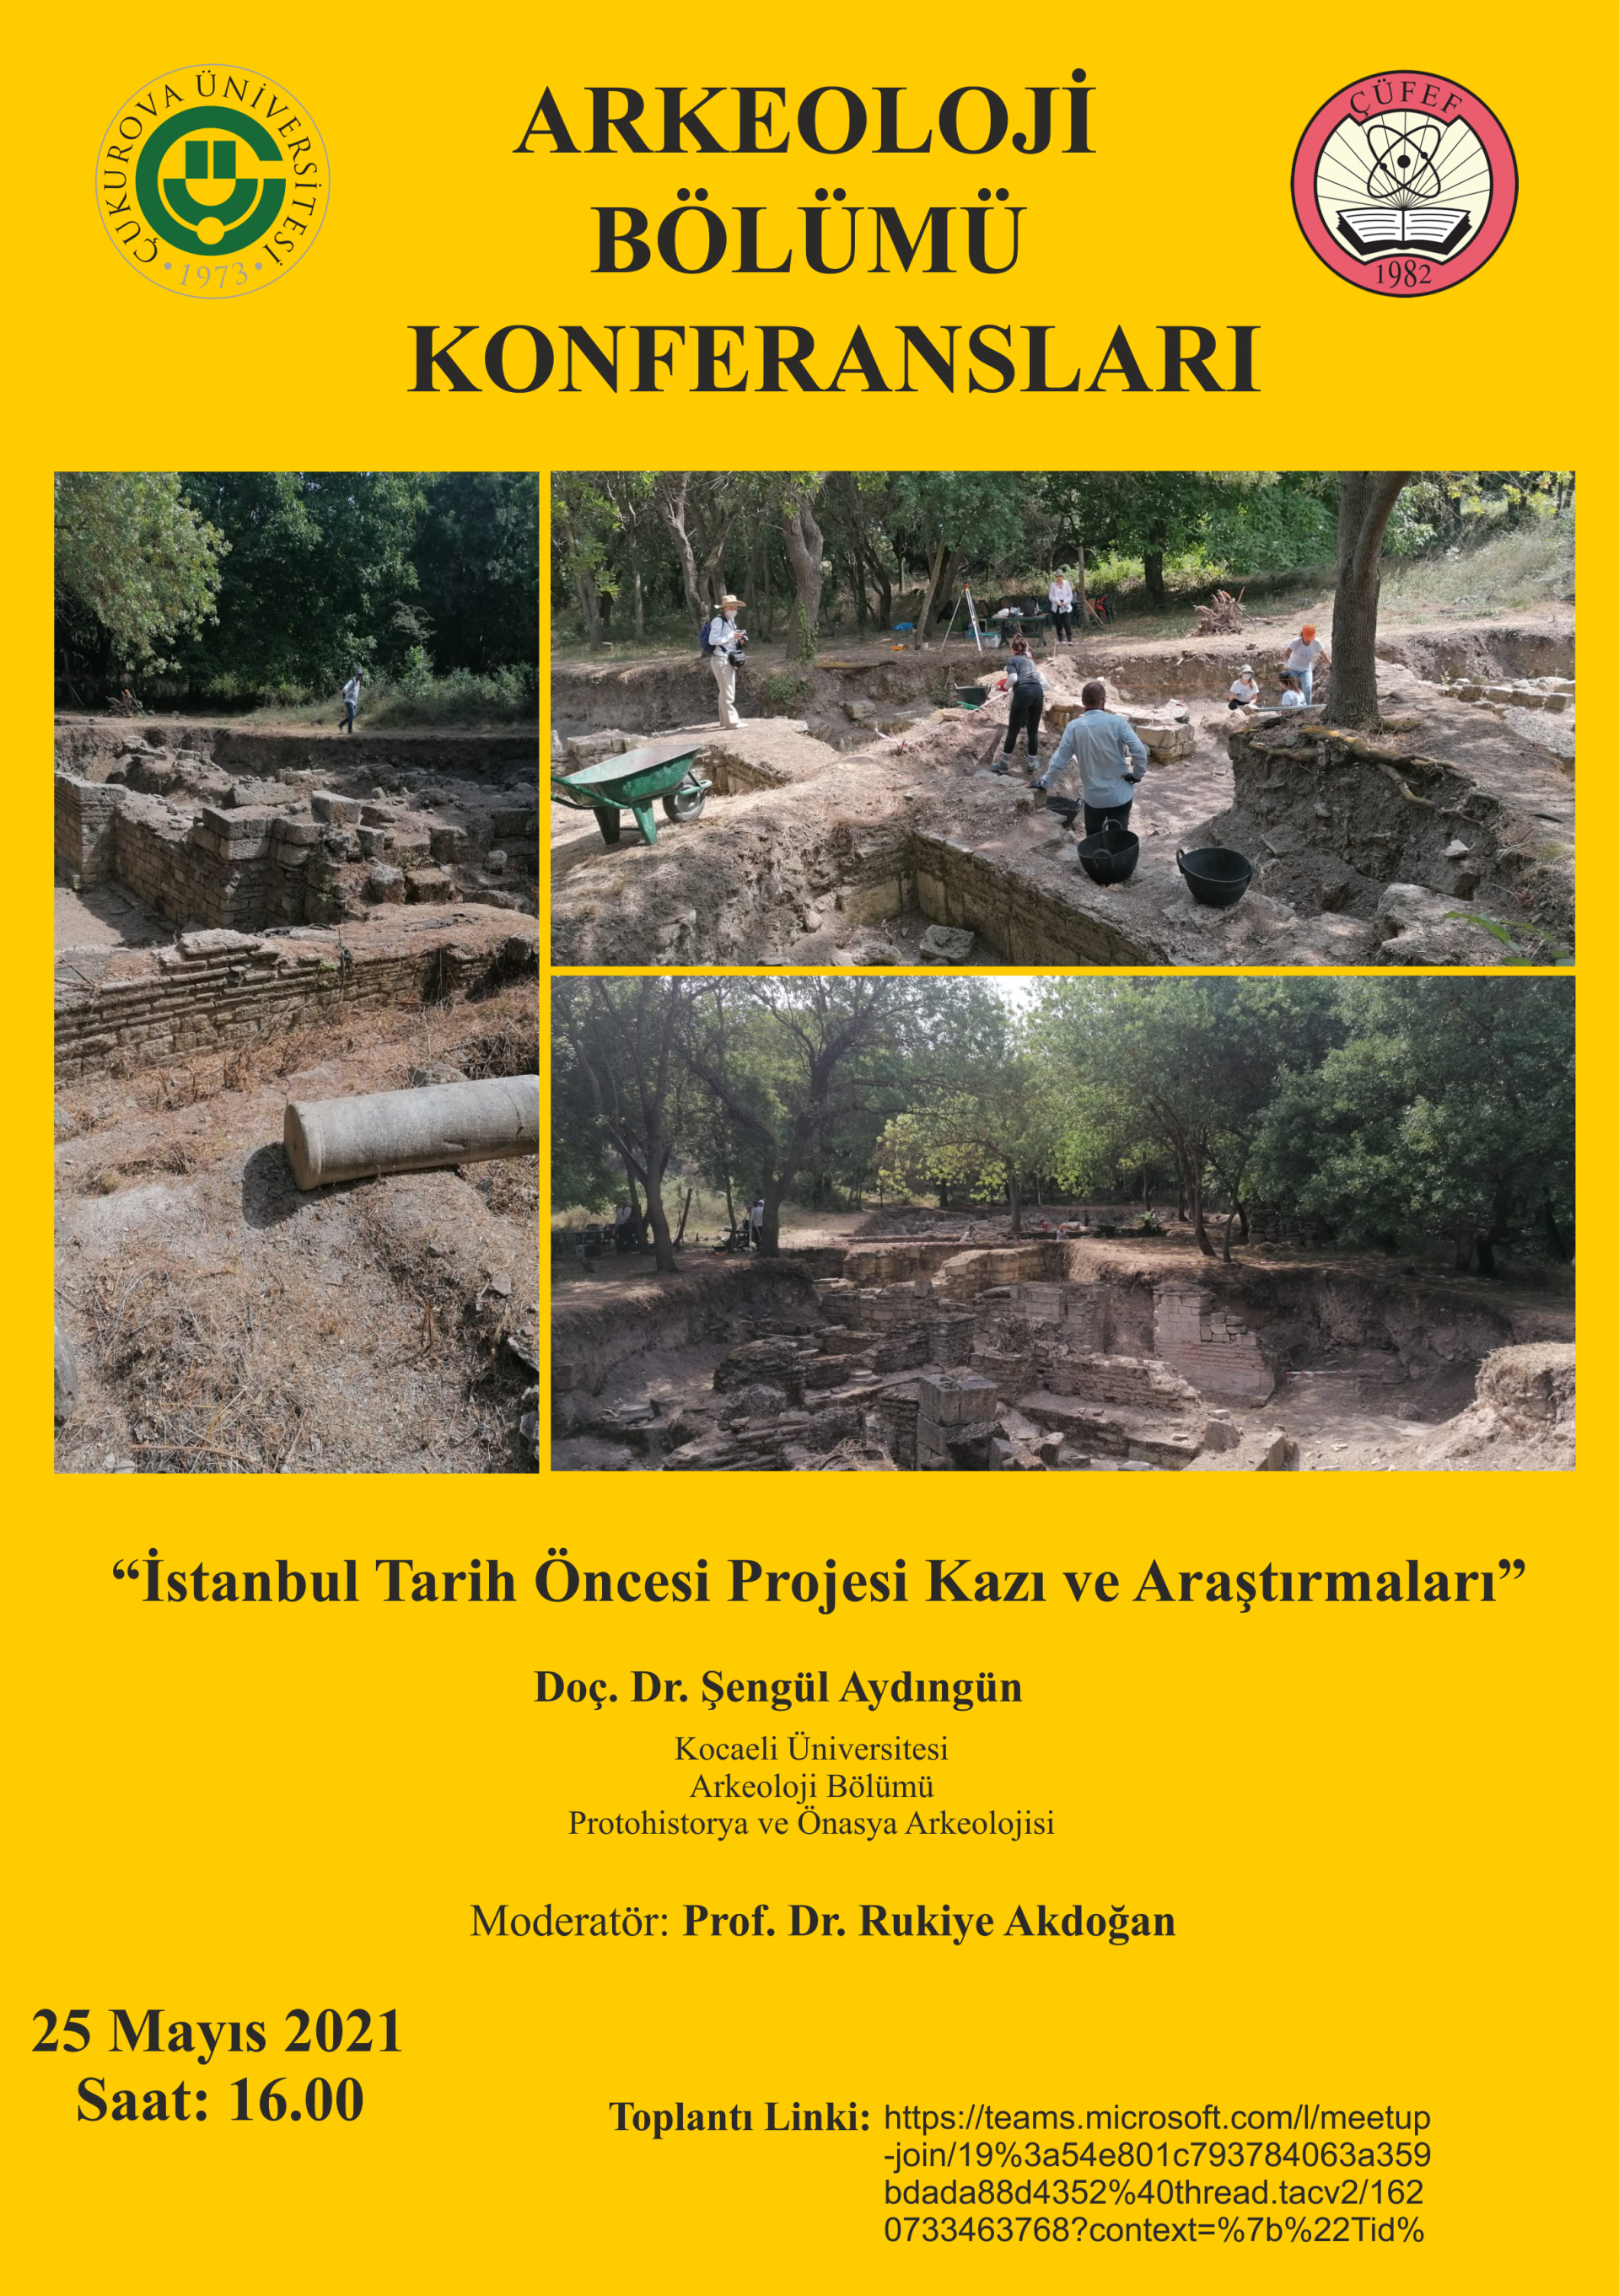 İstanbul Tarih Öncesi Projesi Kazı ve Araştırmaları konulu konferans